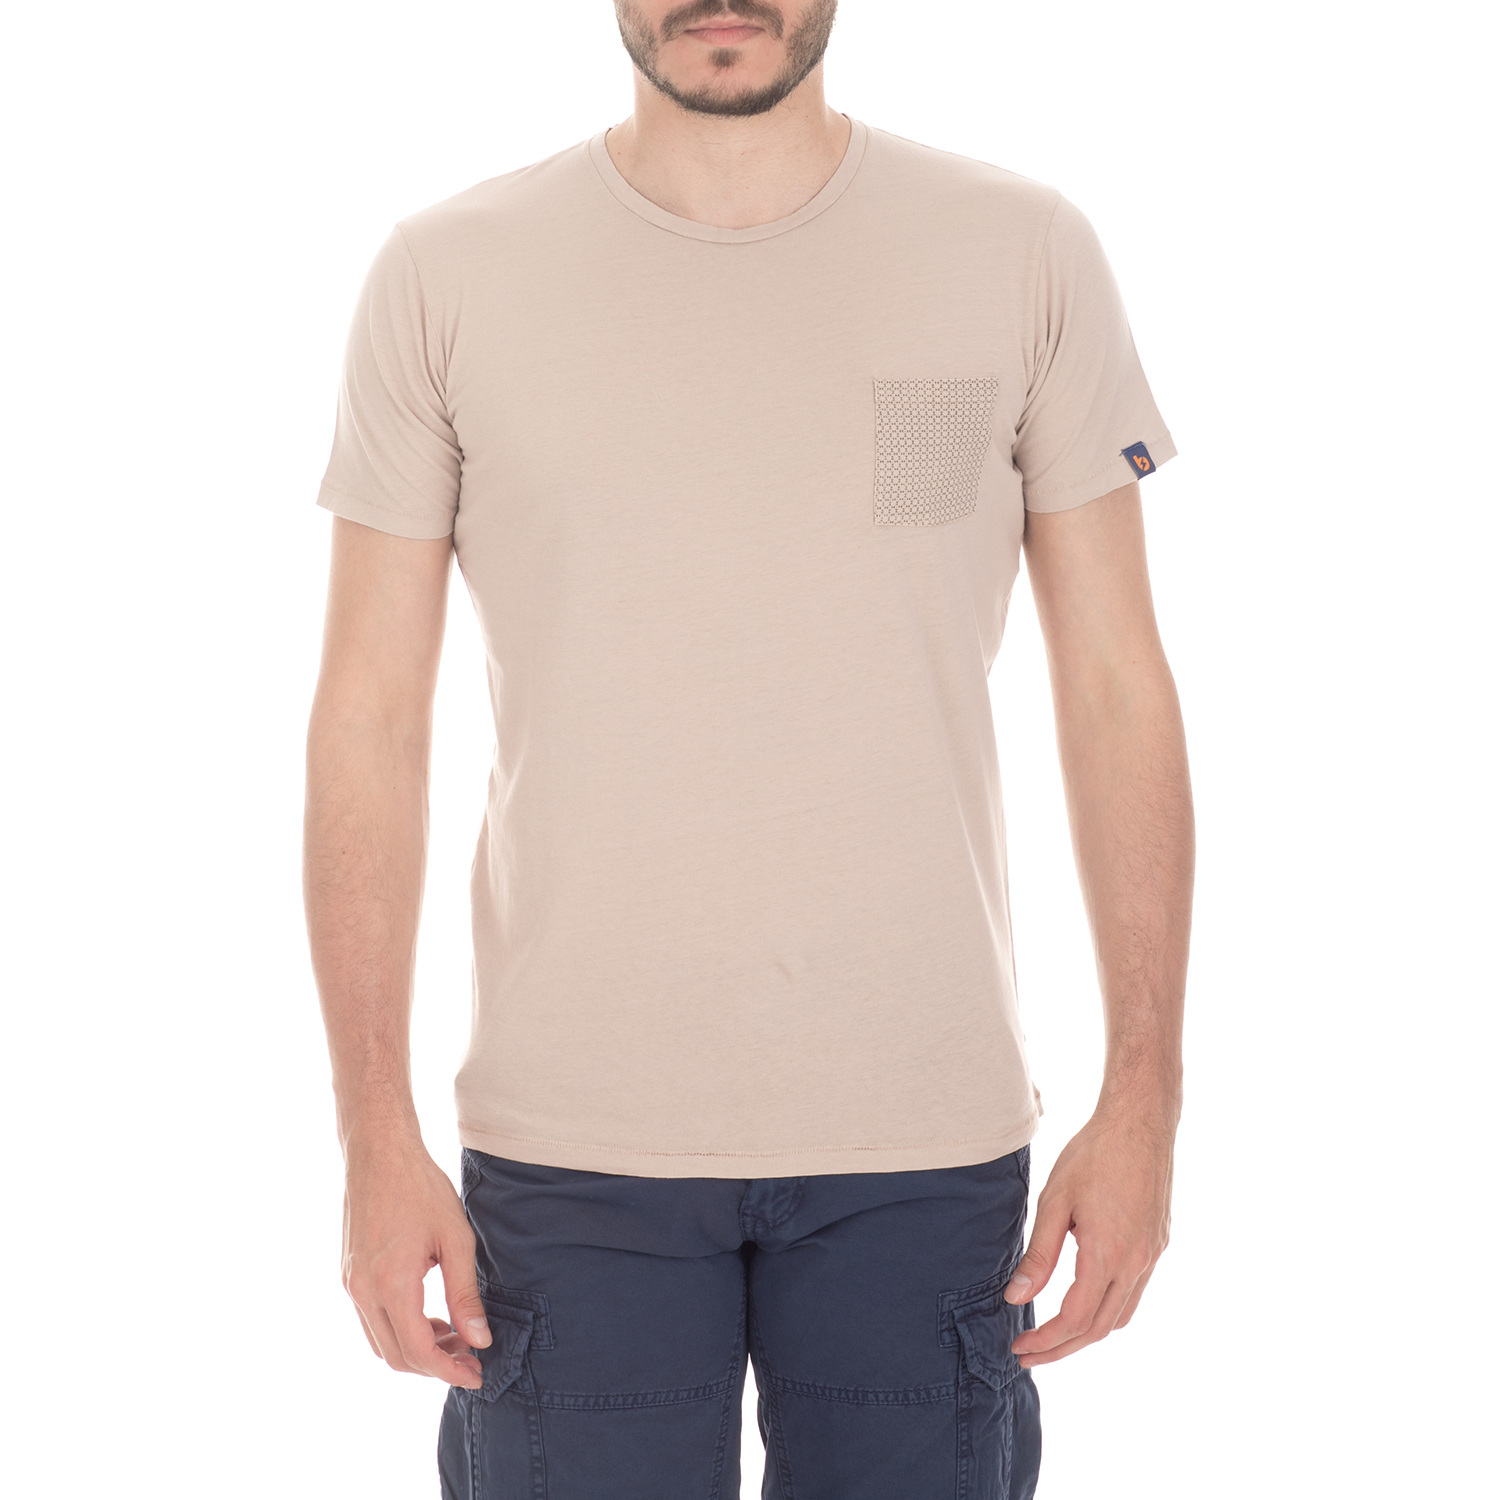 BATTERY - Ανδρική μπλούζα BATTERY ροζ-μπεζ Ανδρικά/Ρούχα/Μπλούζες/Κοντομάνικες